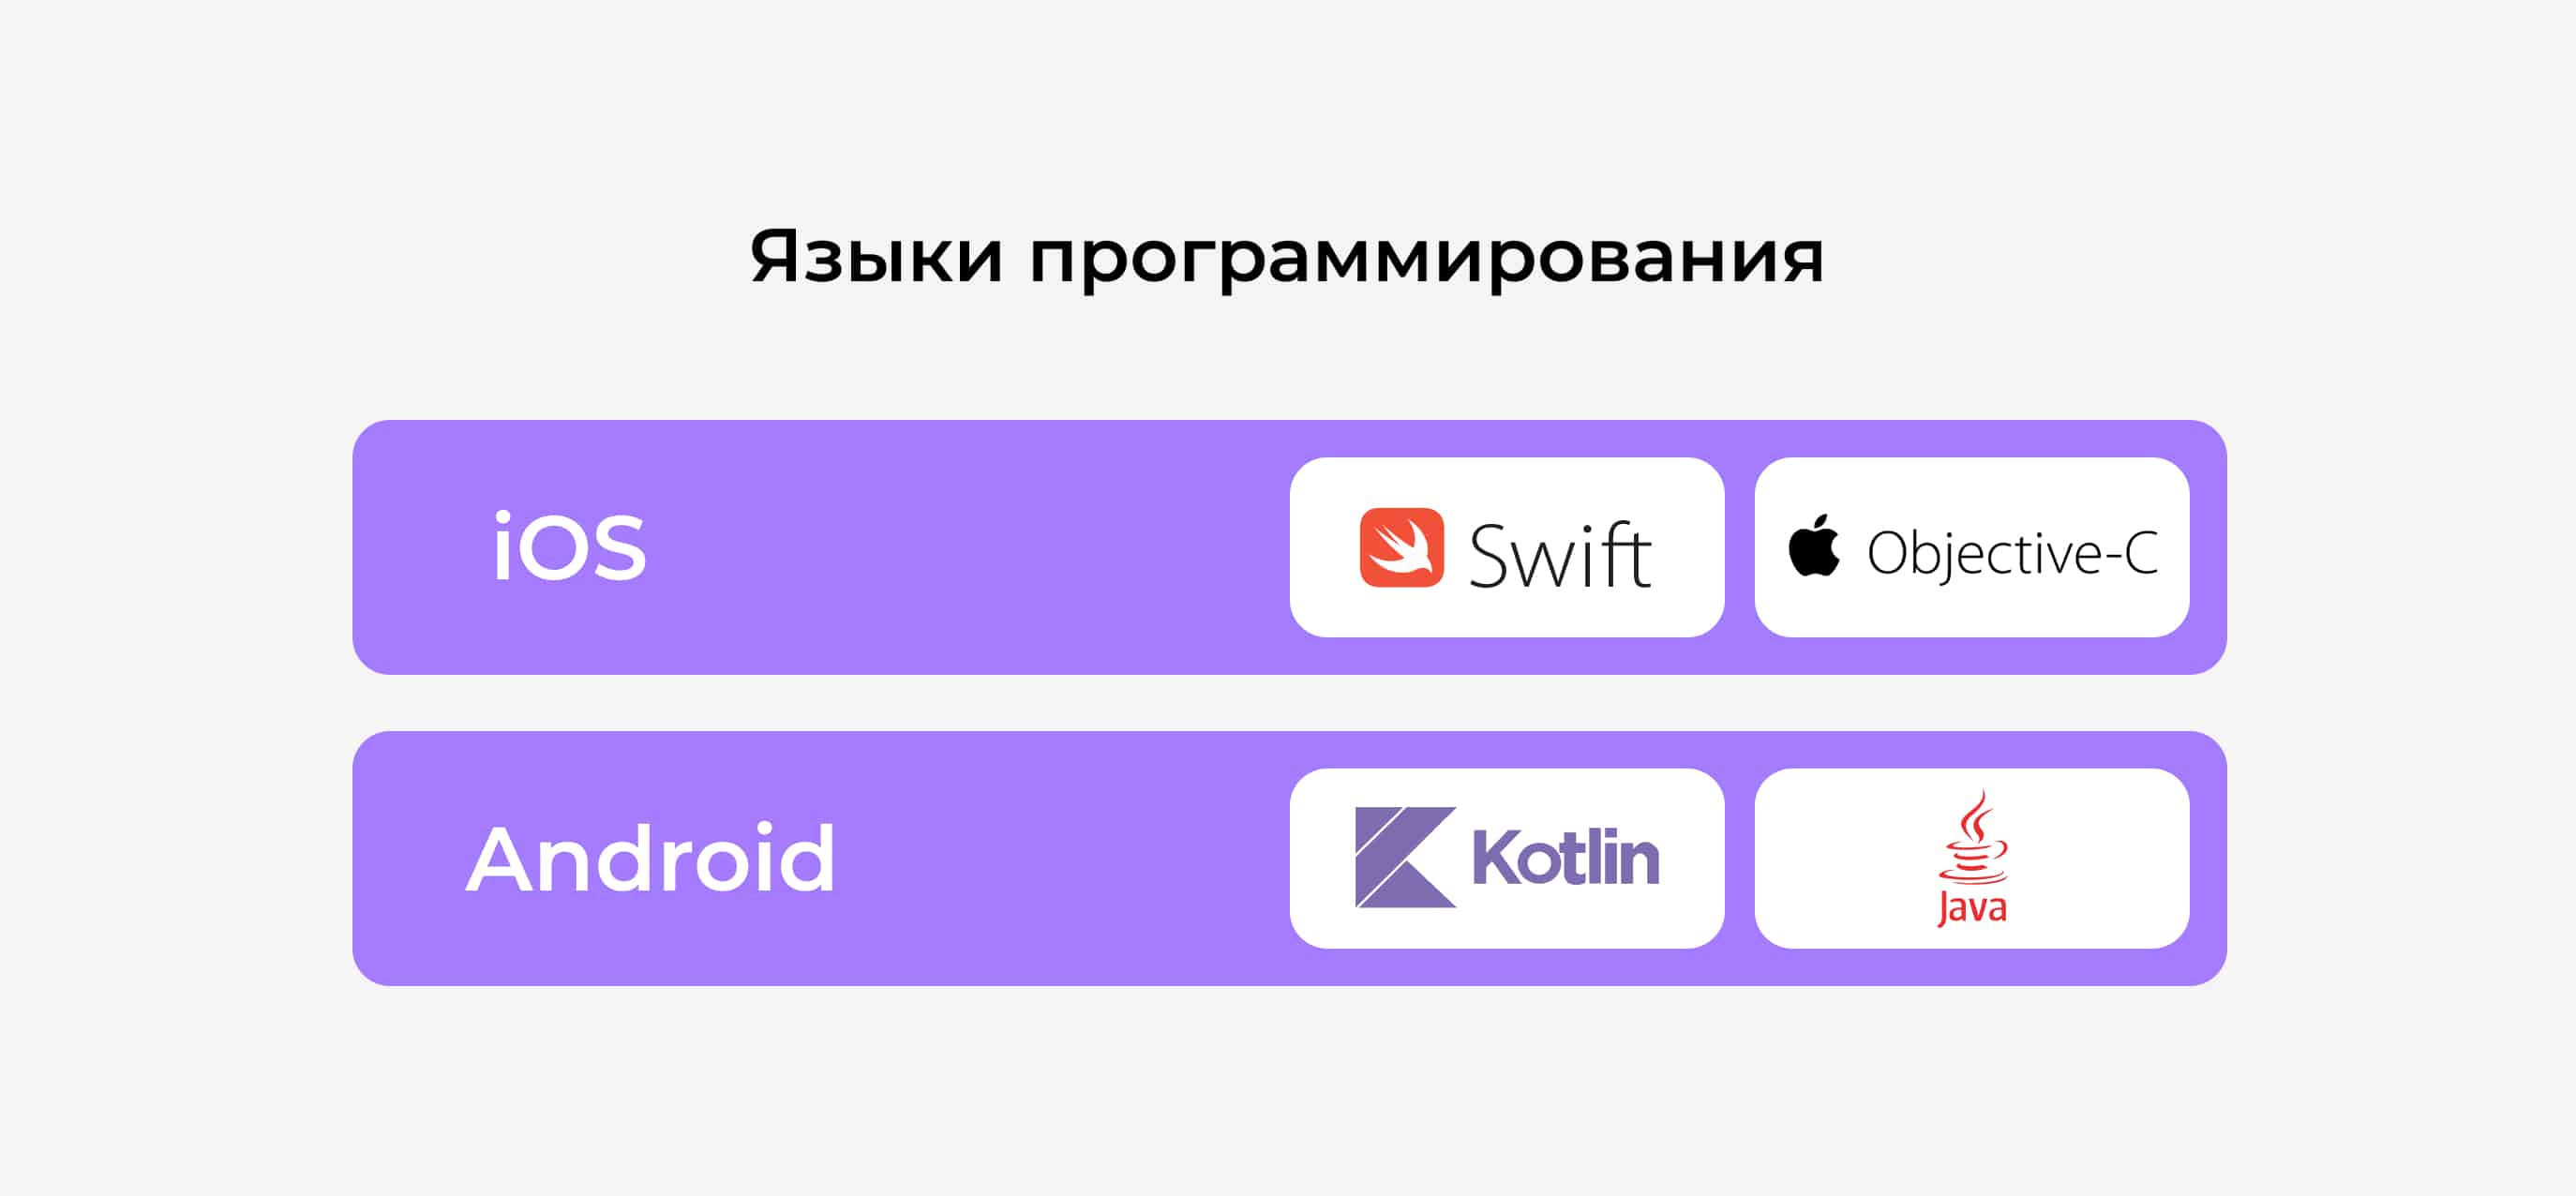 Языки программирования для платформ iOS и Android